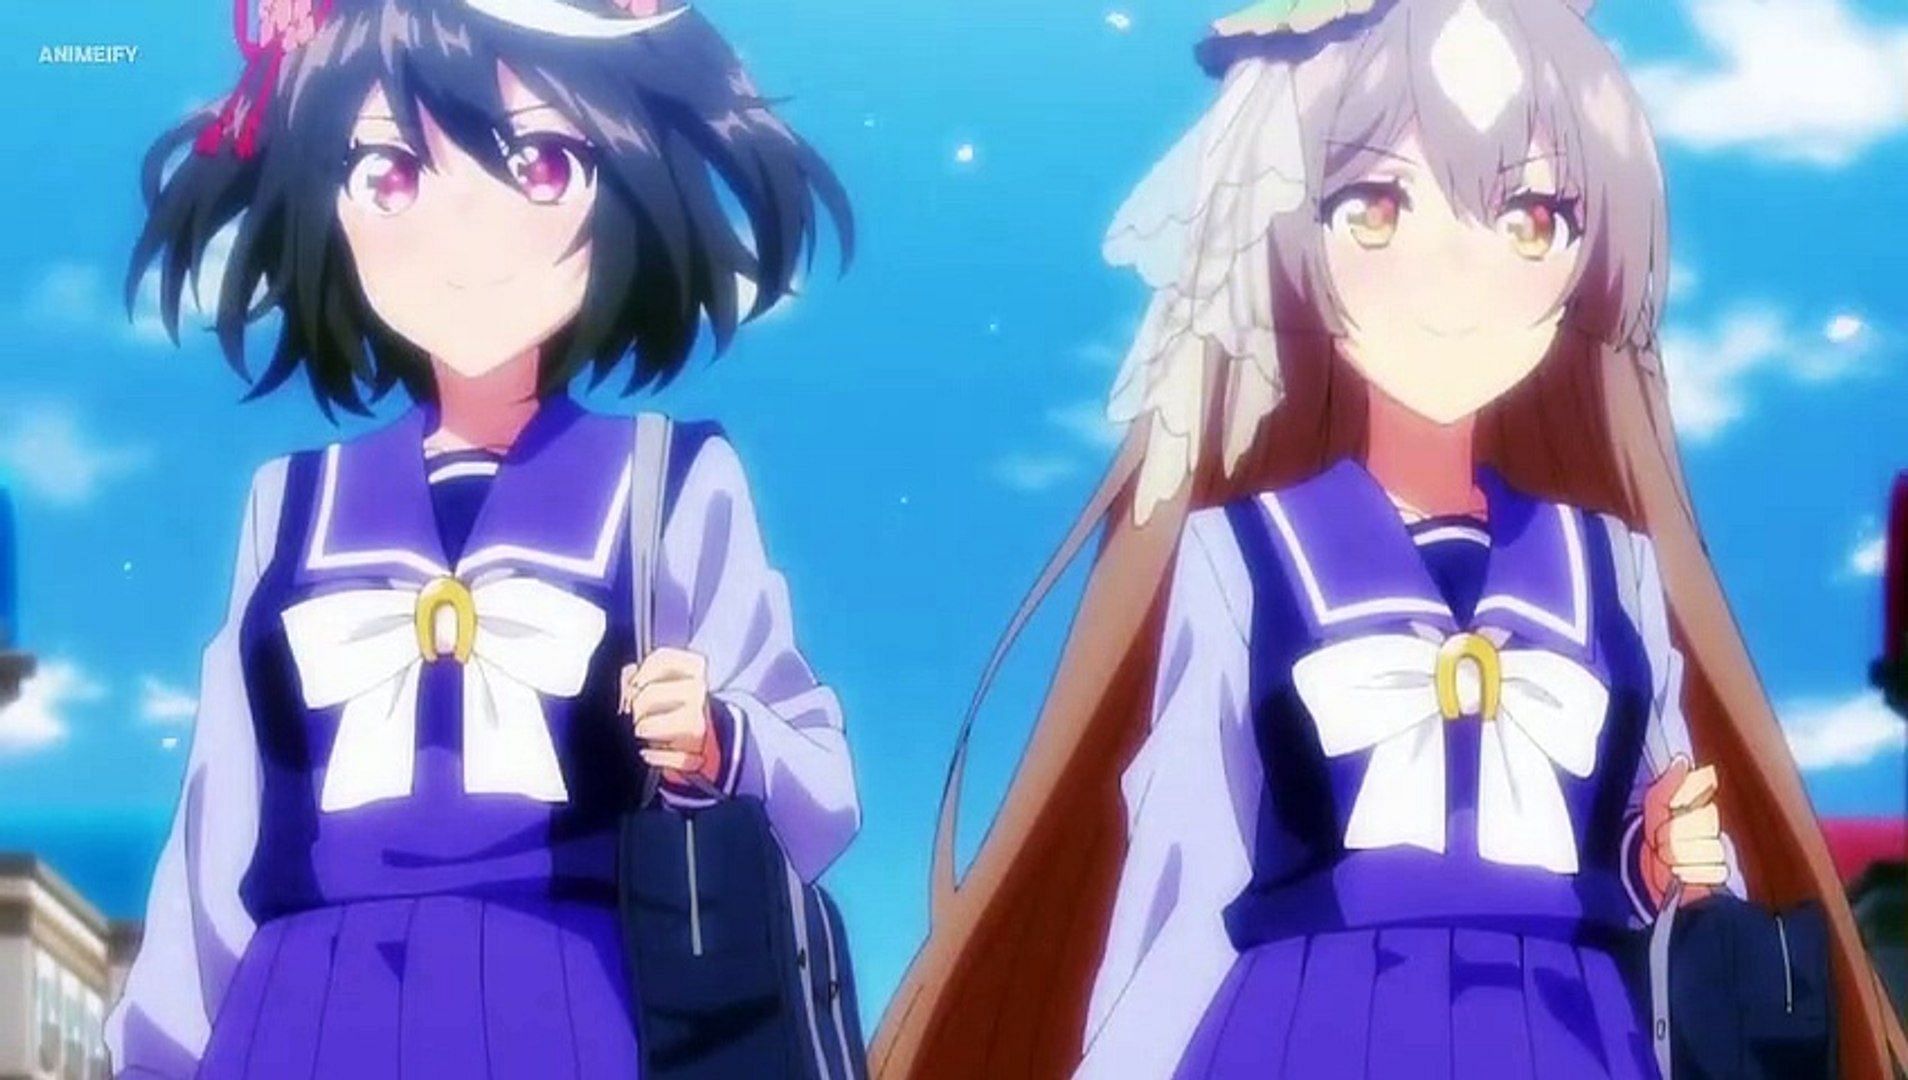 1/3 ♡﹚ | Anime, Friend anime, Aesthetic anime